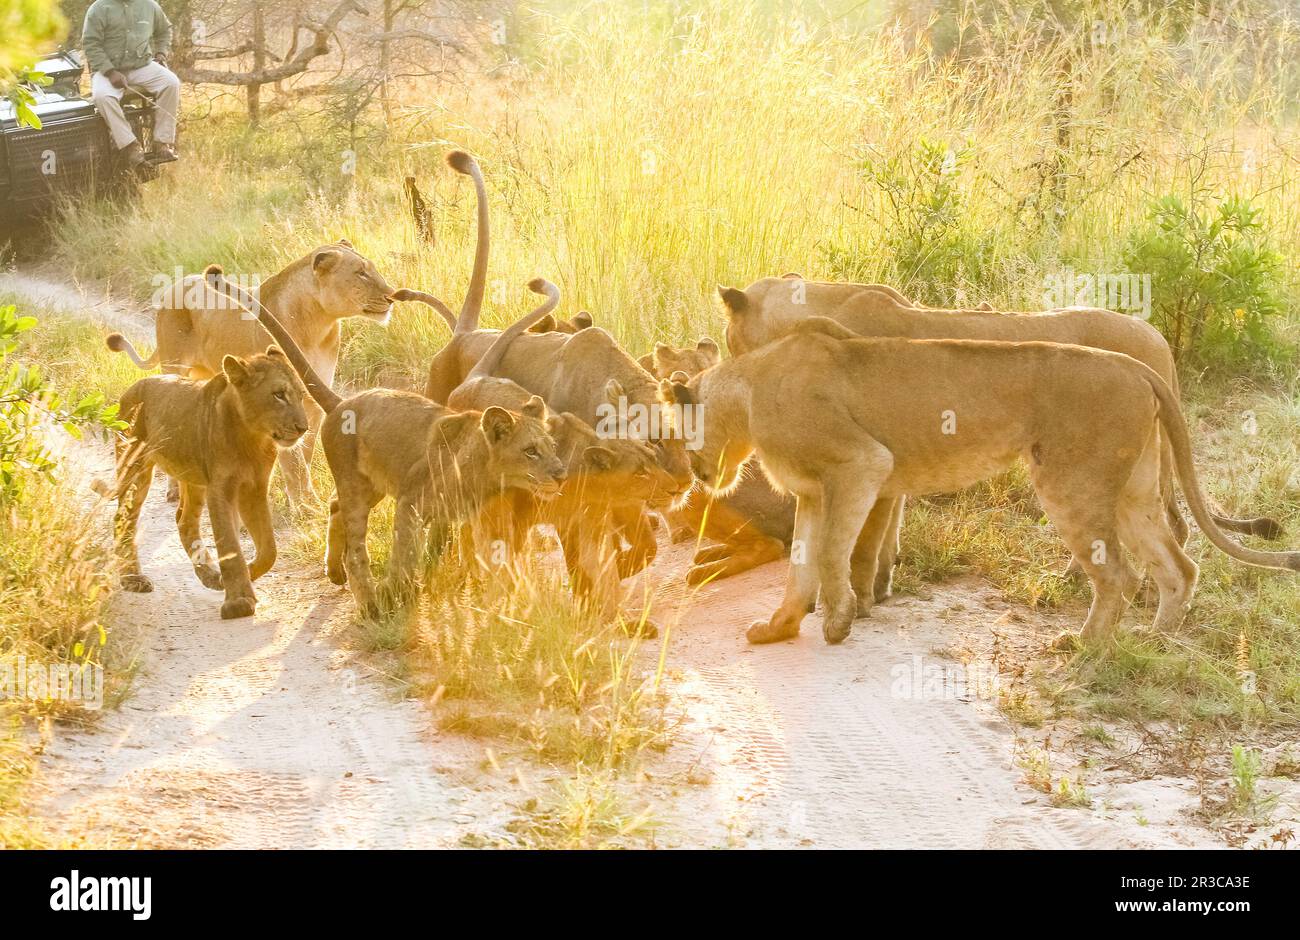 Une fierté de Lions africains se saluer dans une réserve de chasse de la faune d'Afrique du Sud, femme lionne et lionceaux Banque D'Images